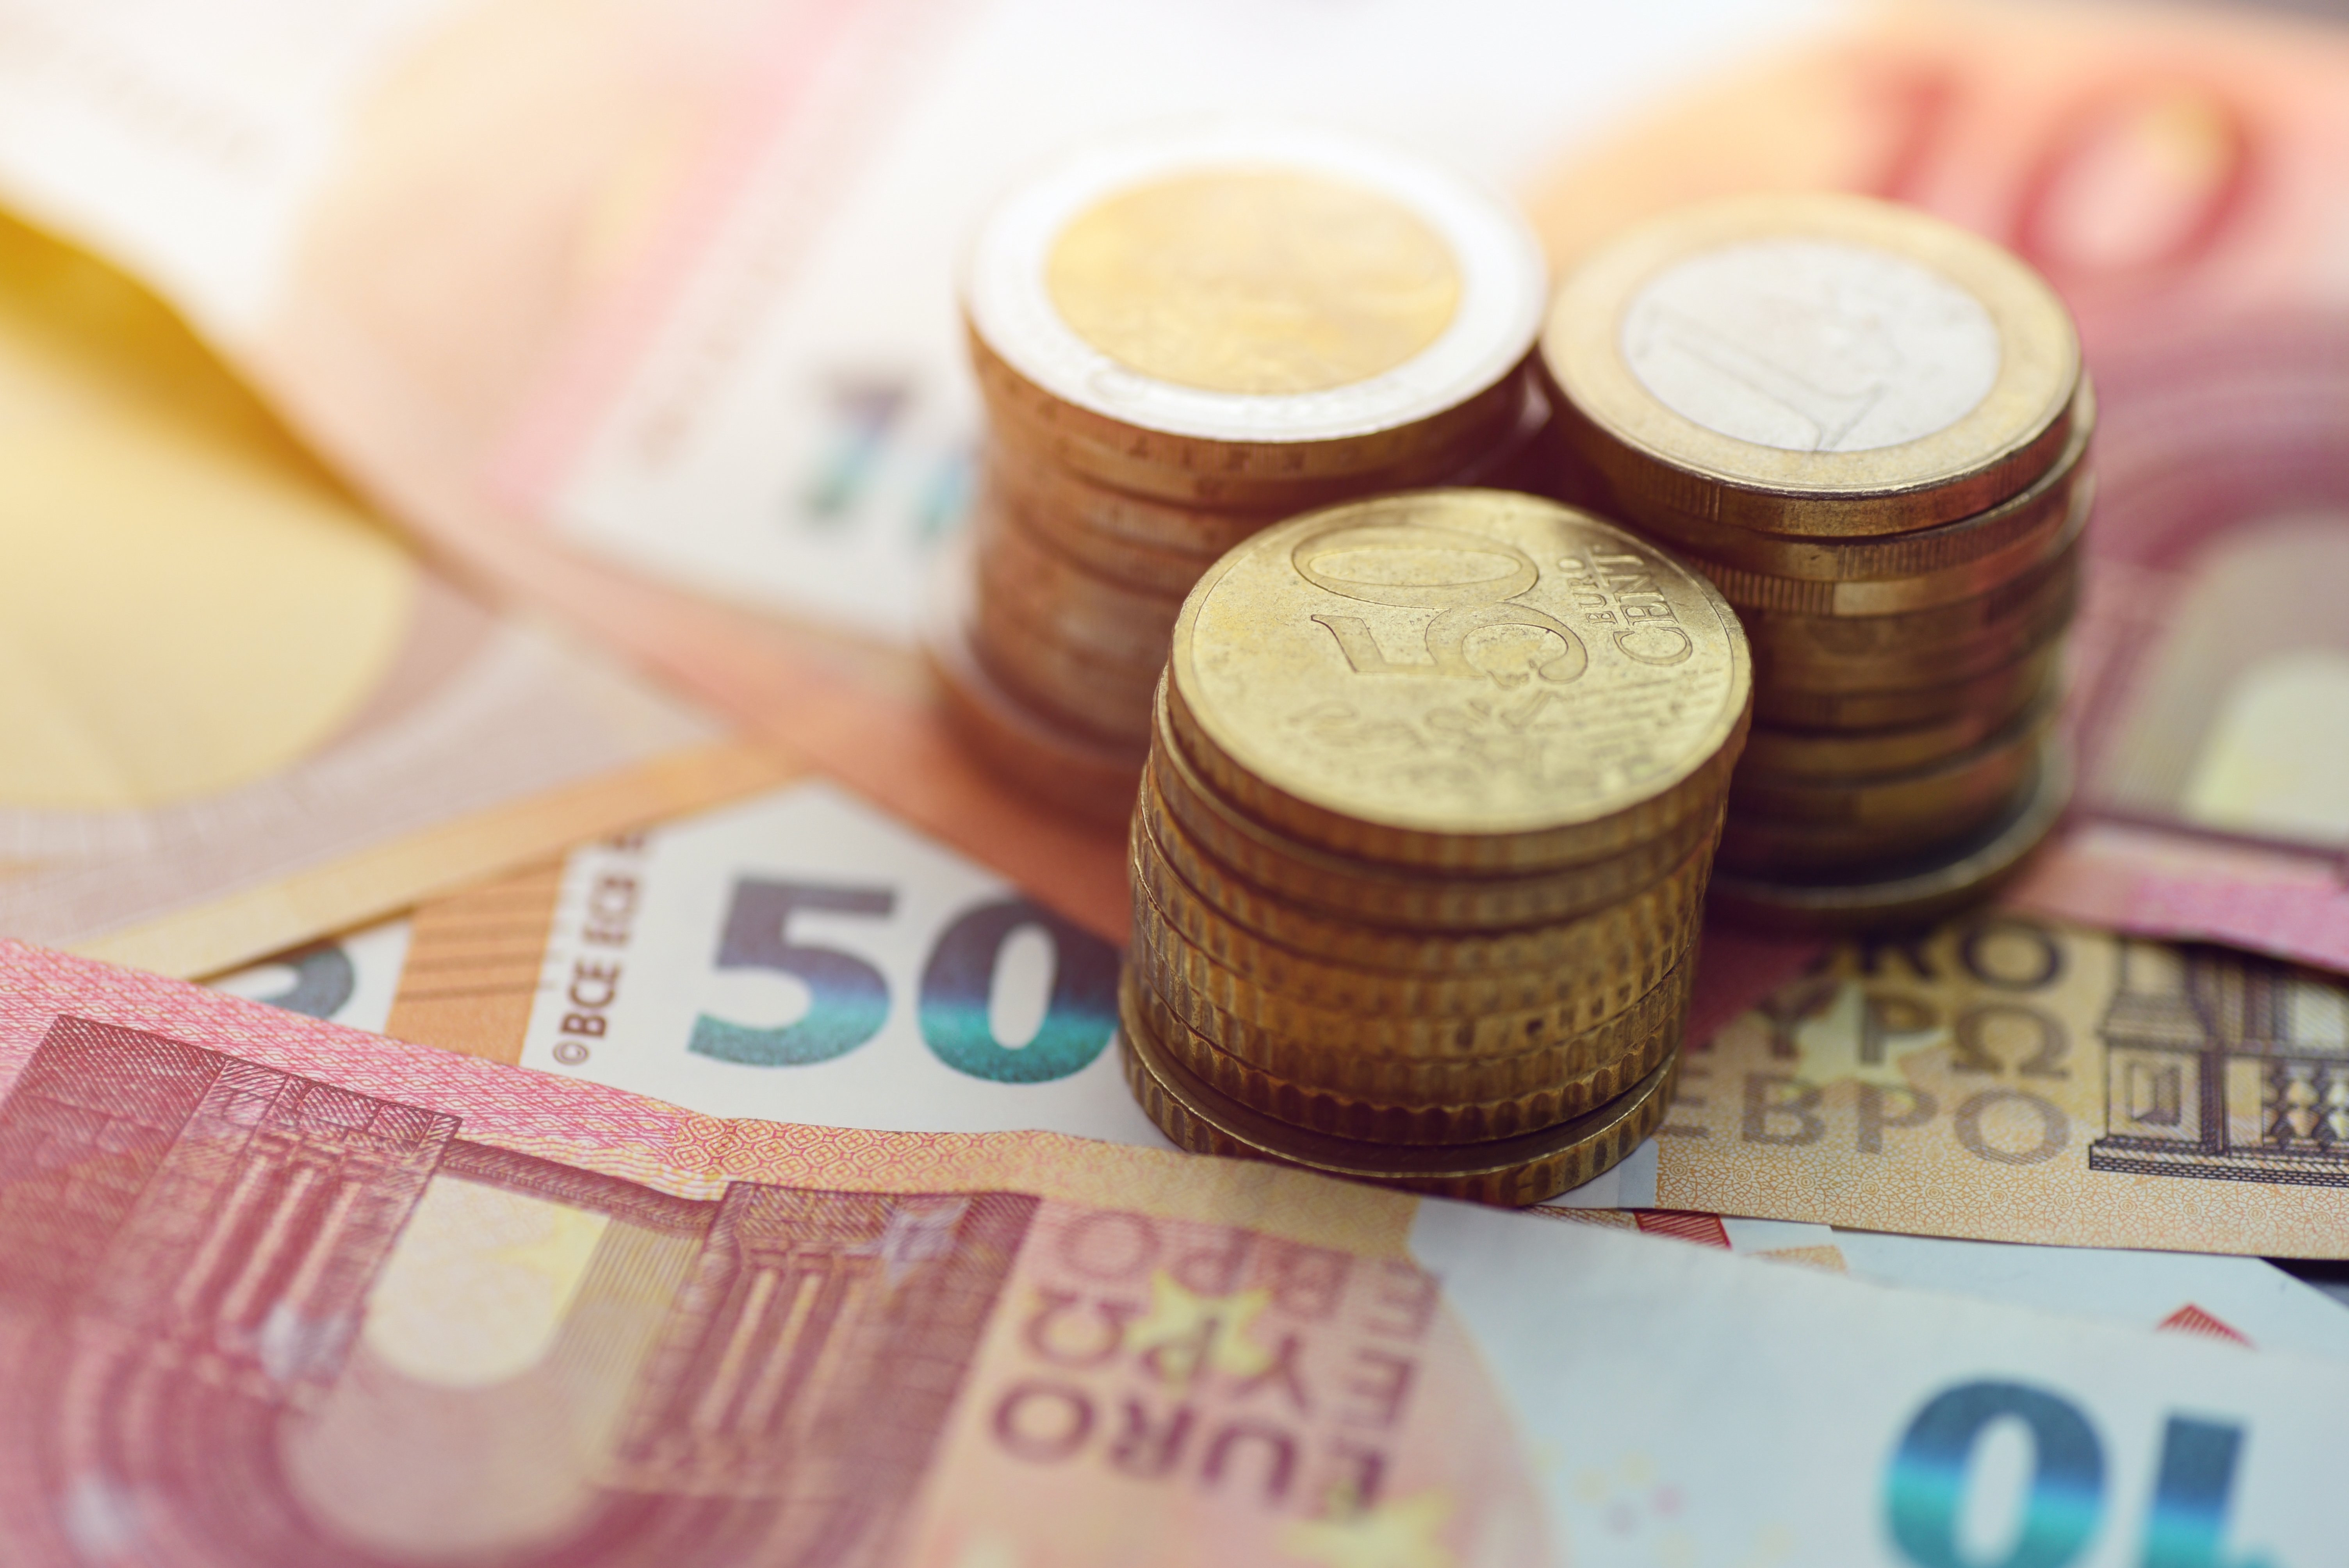 Χαρδαλιάς: 640 εκατ. ευρώ από την Περιφέρεια Αττικής για την ενίσχυση των ευάλωτων